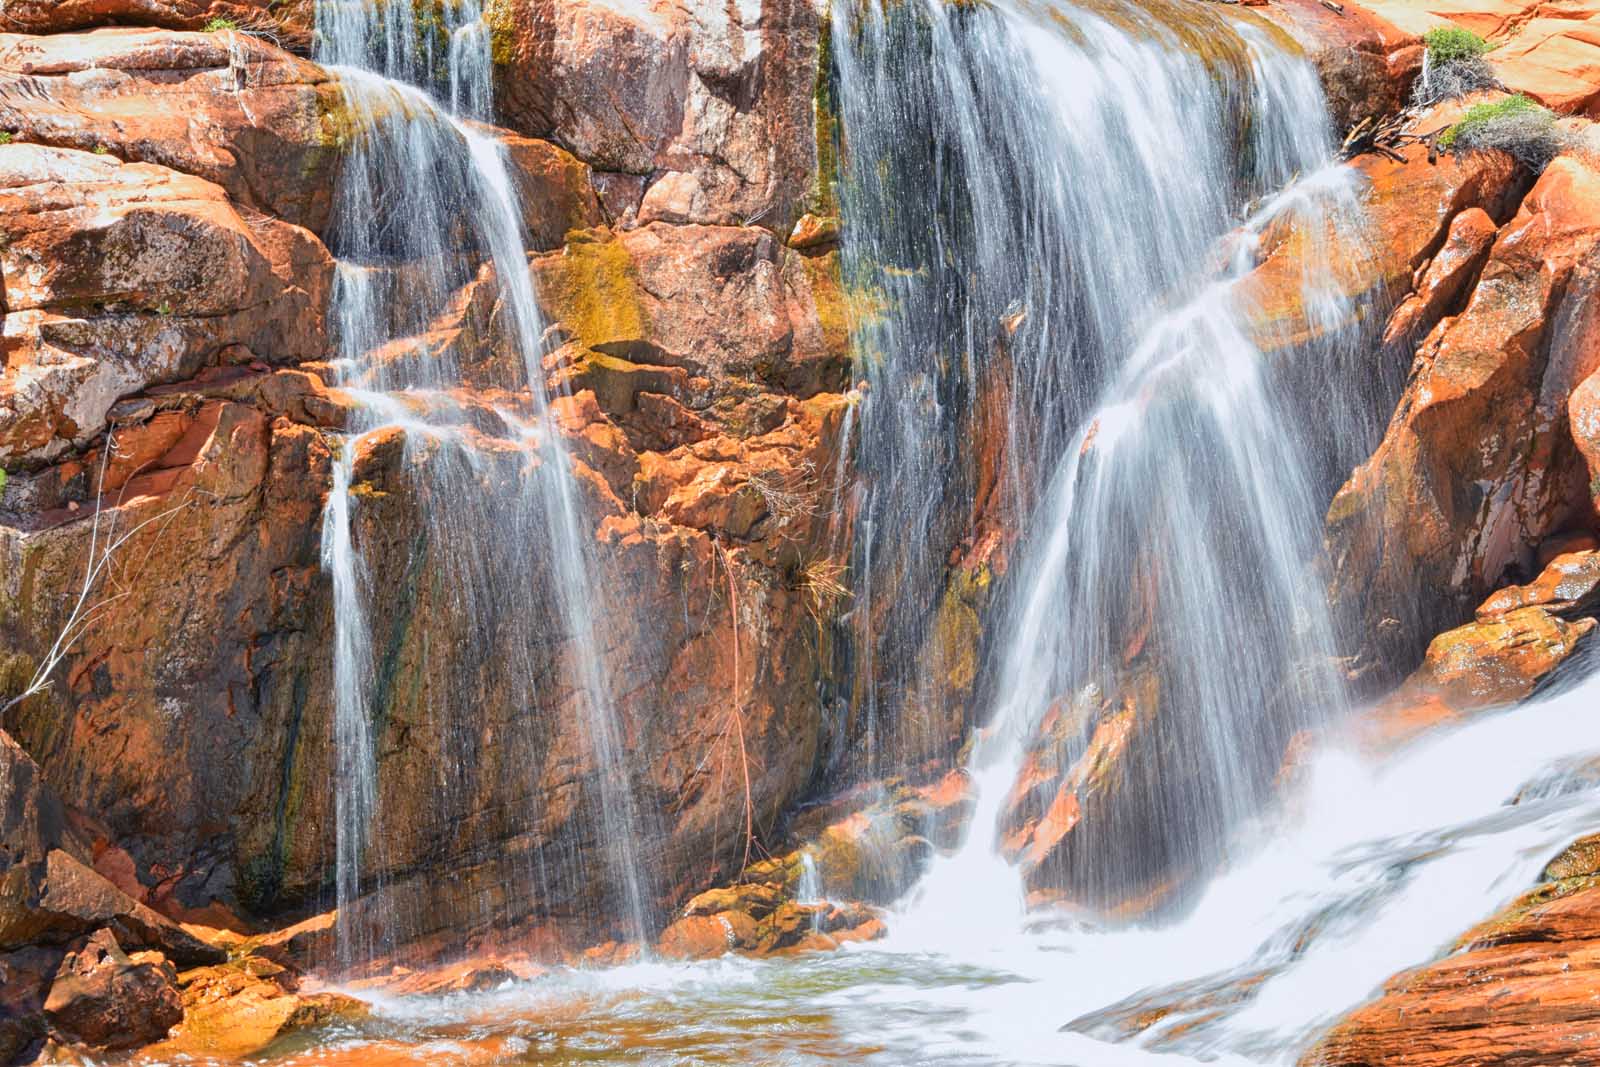 Waterfall at Gunlock State Park in Utah